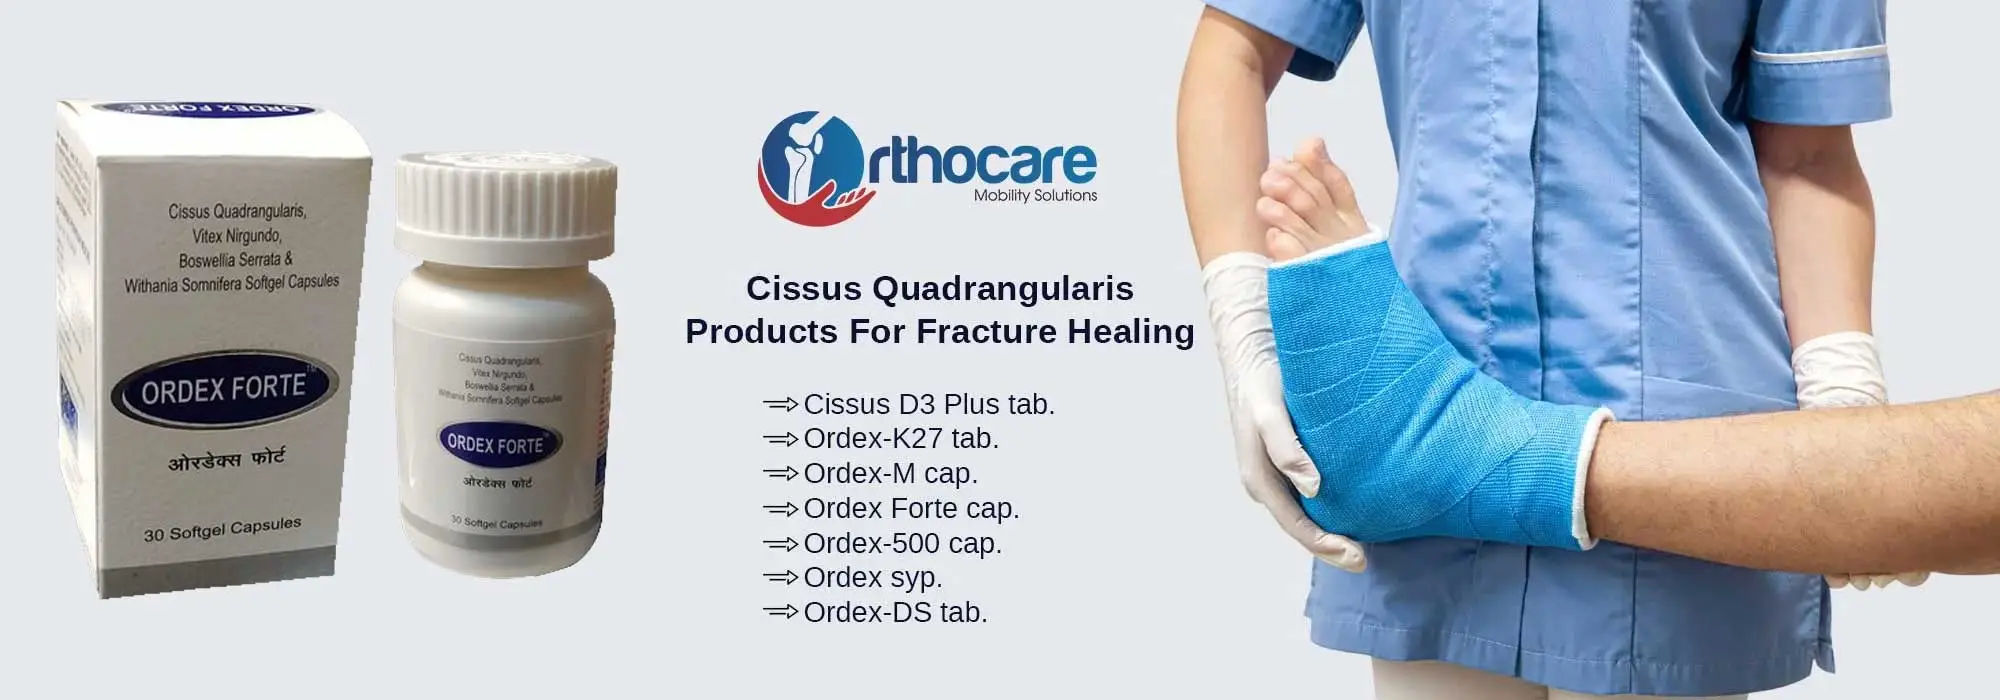 Cissus Quadrangularis Products For Fracture Healing Suppliers in Sivasagar